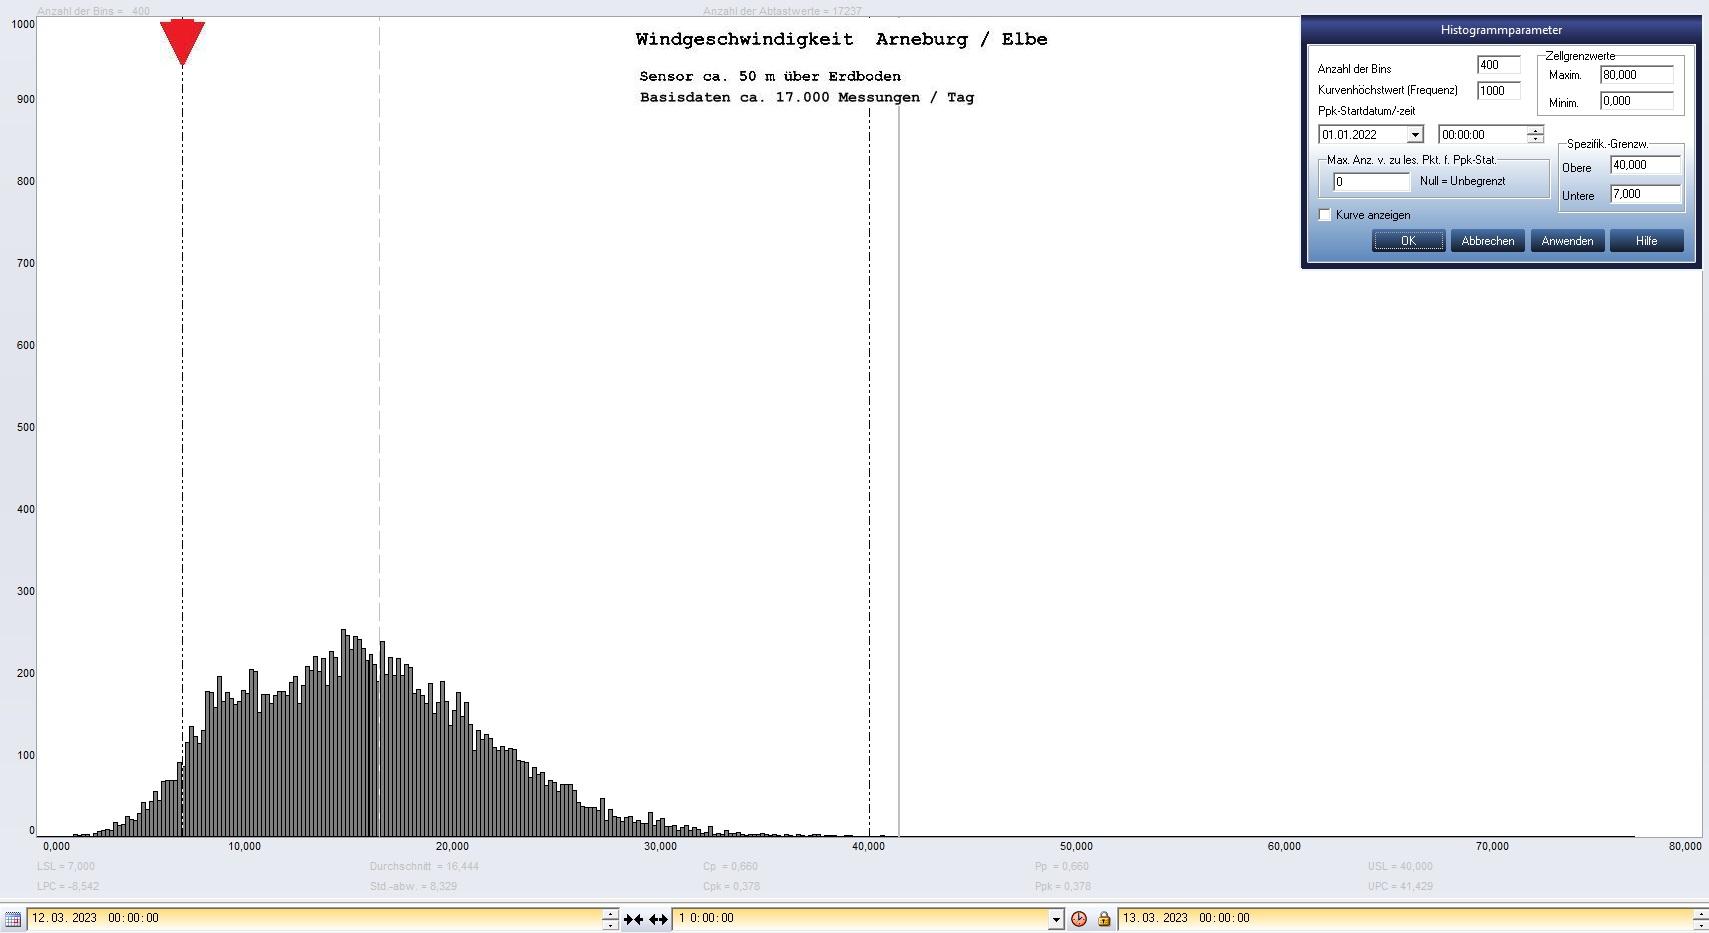 Arneburg Tages-Histogramm Winddaten, 12.03.2023
  Histogramm, Sensor auf Gebude, ca. 50 m ber Erdboden, Basis: 5s-Aufzeichnung